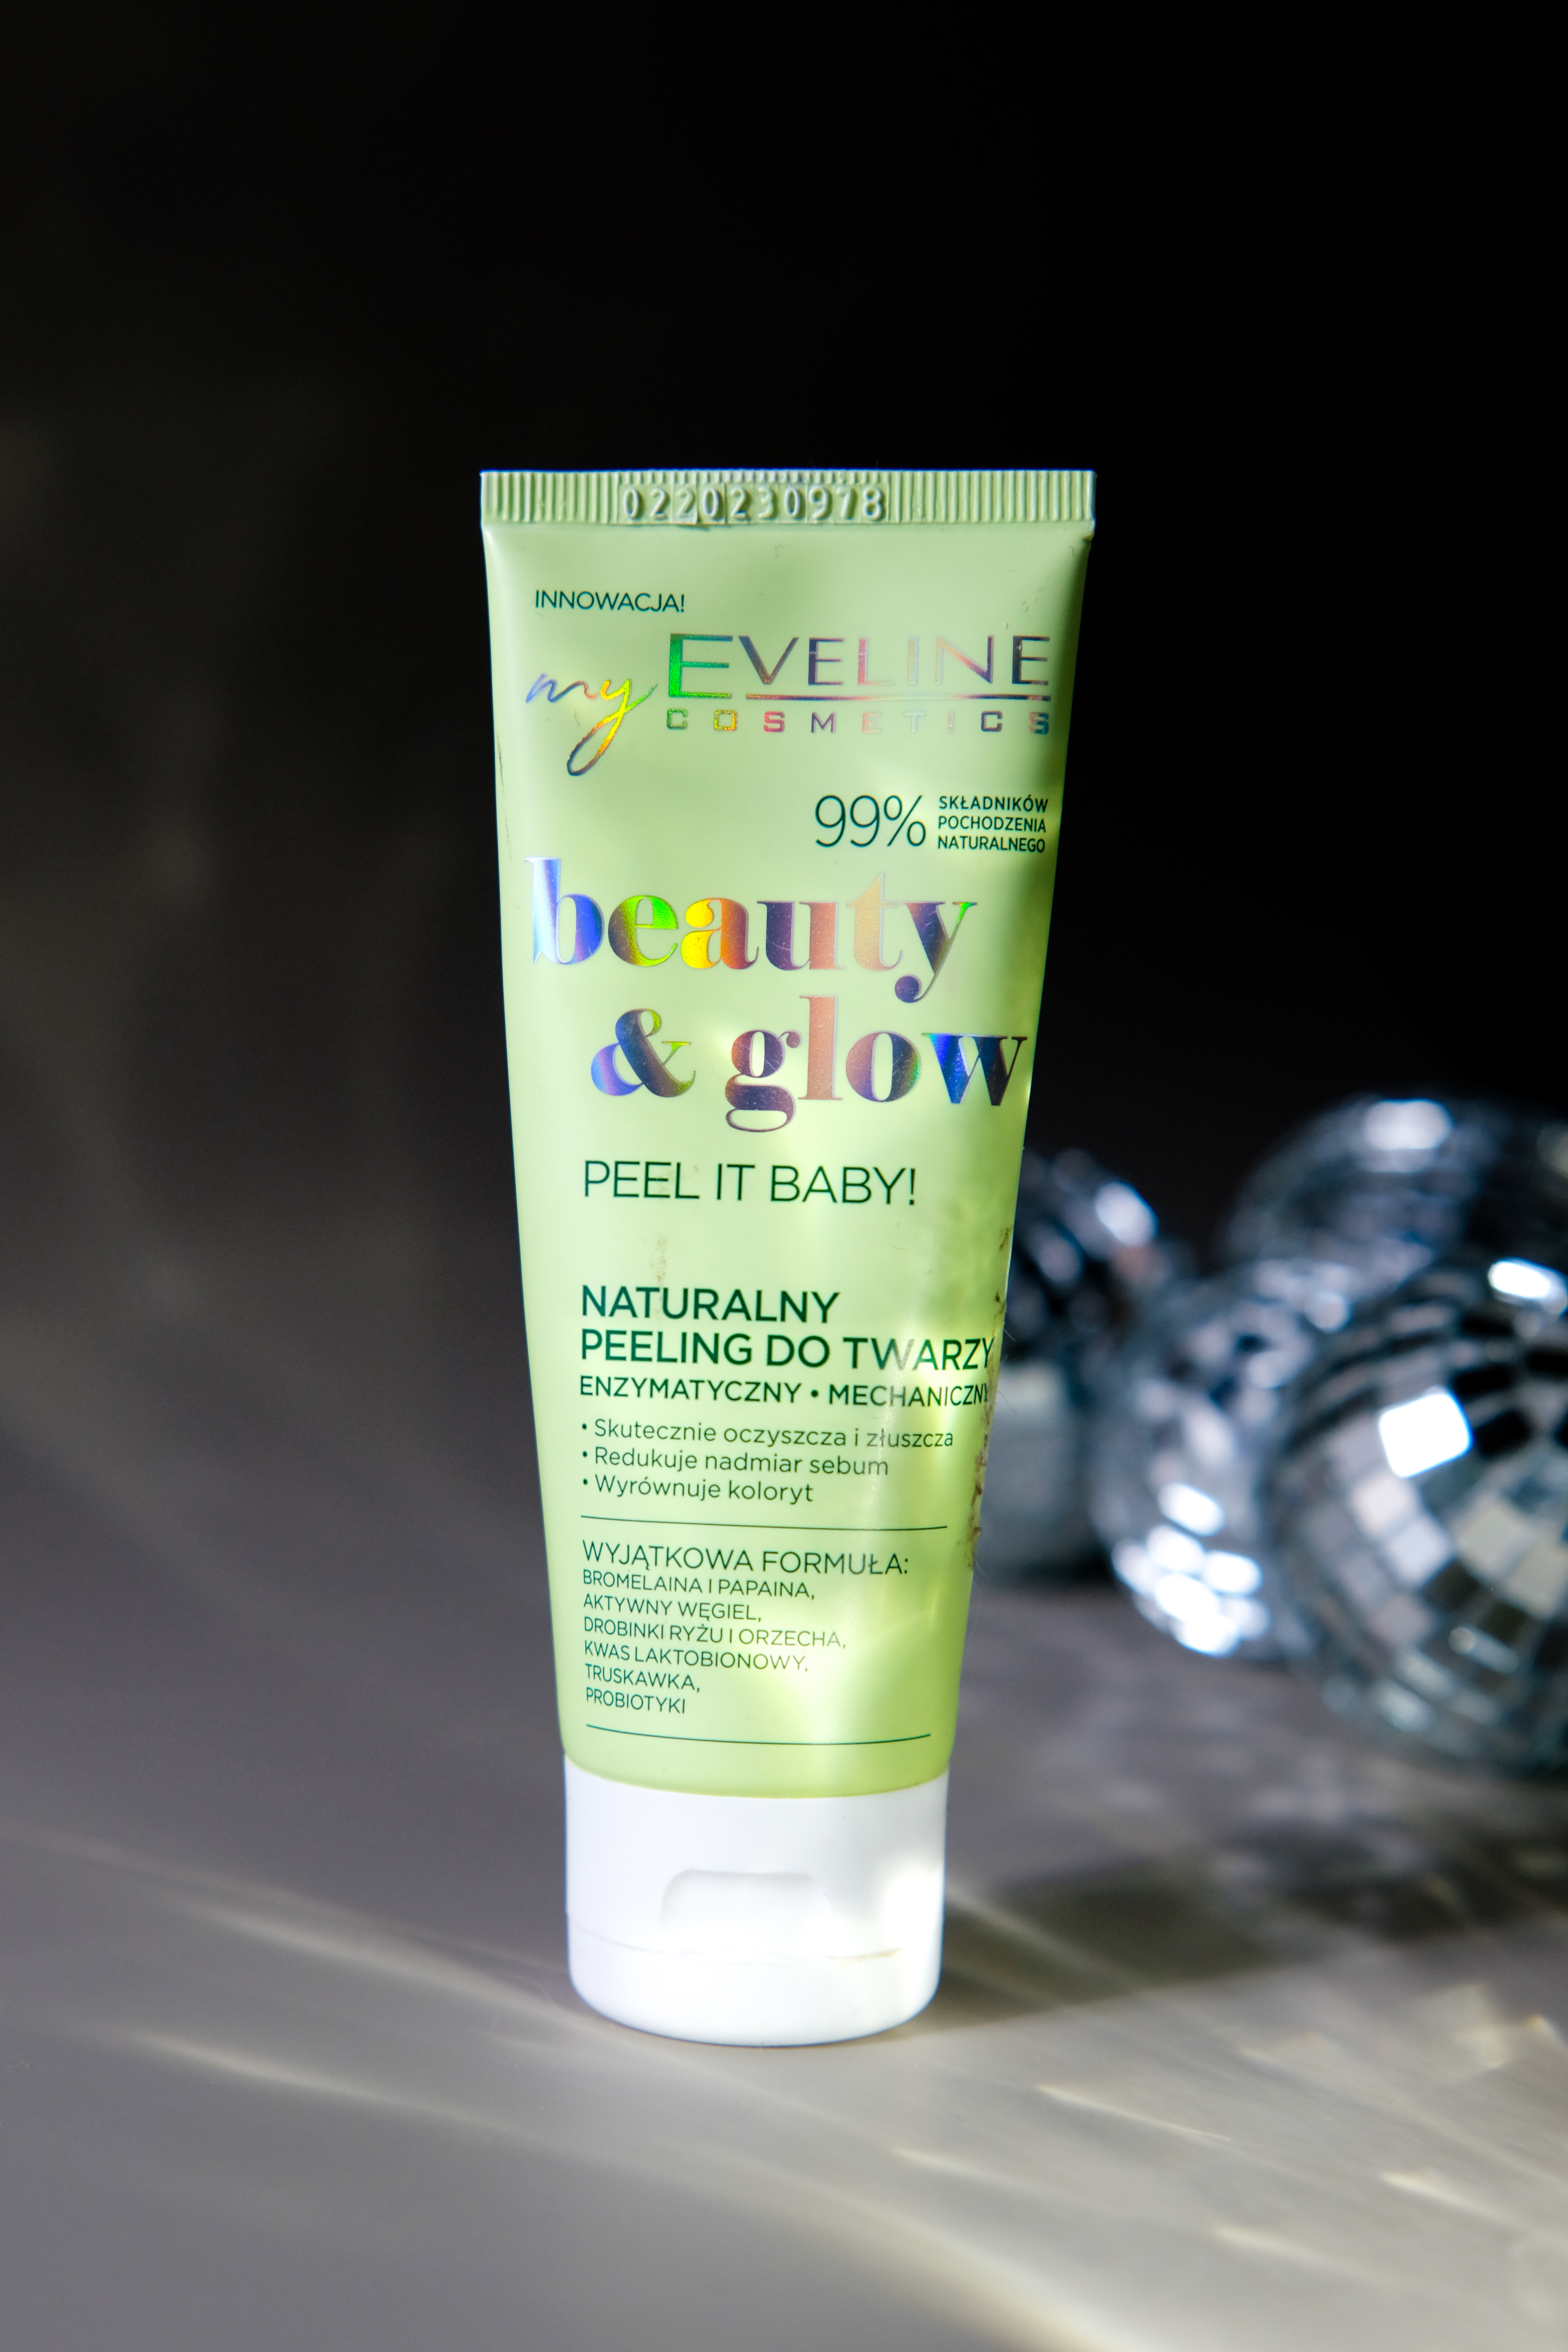 Скраб який наче створенний для сухої шкіри : Eveline  Beauty & Glow Peel It Baby! Natural F